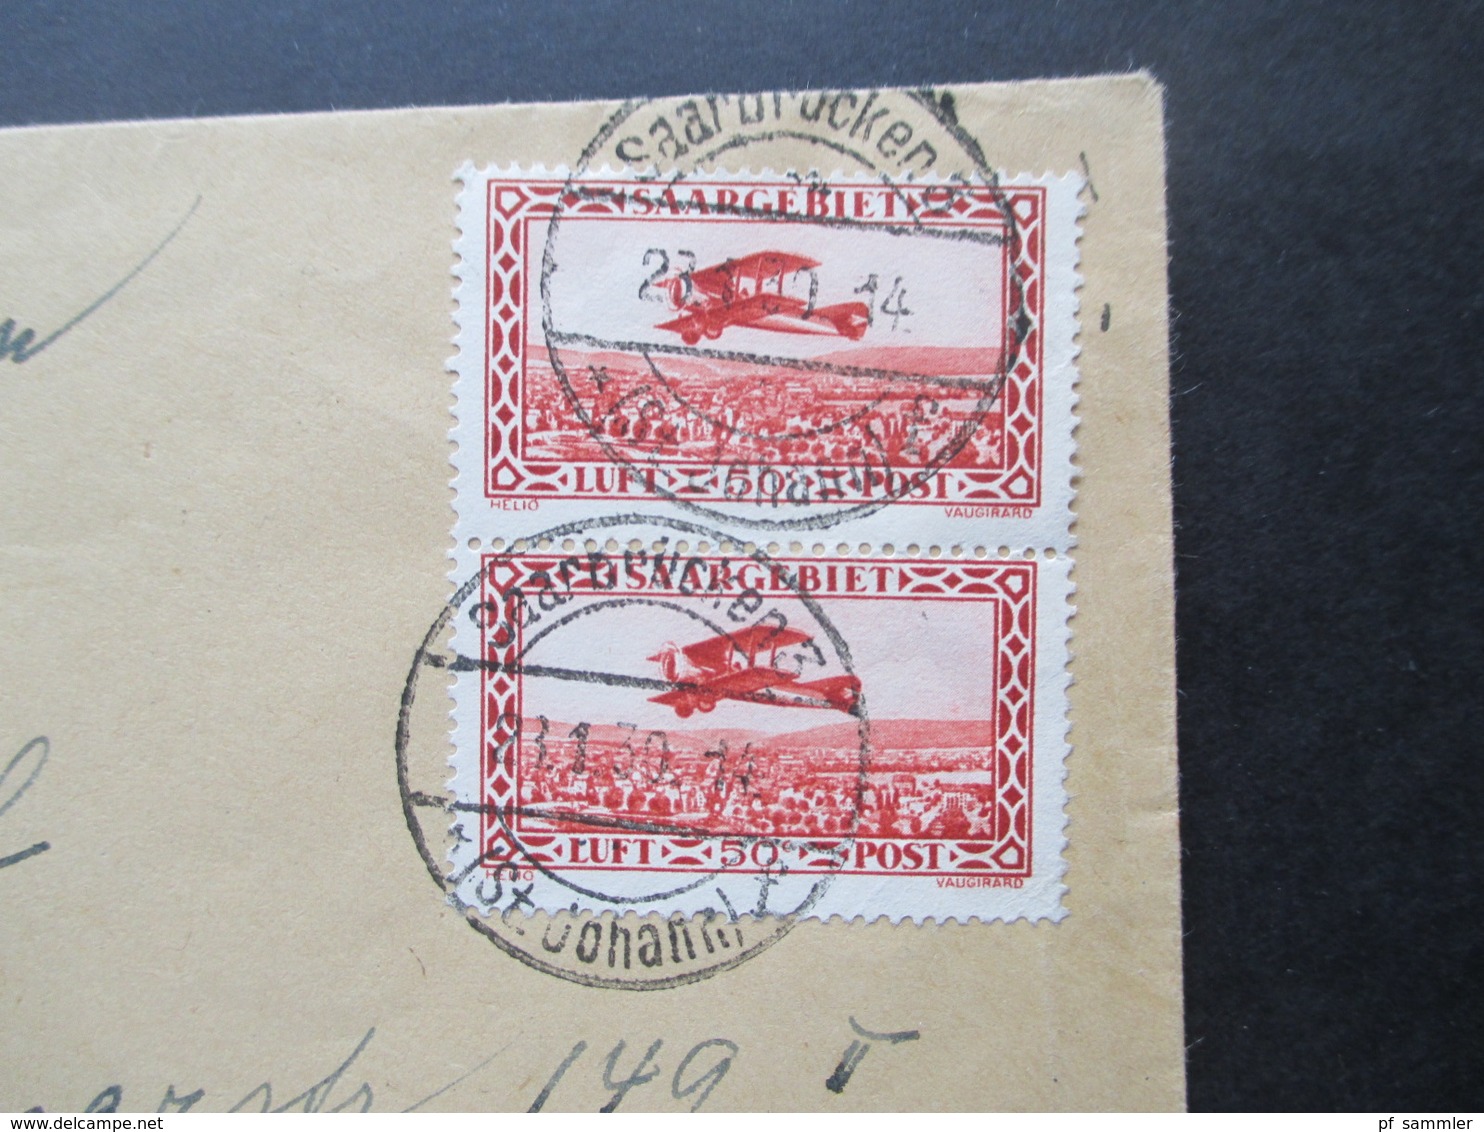 Saargebiet 1930 Flugpostmarken Nr. 126 / 127 MiF Einschreiben Saarbrücken 3 (St. Johann) Nach München Wertzeichenversand - Lettres & Documents